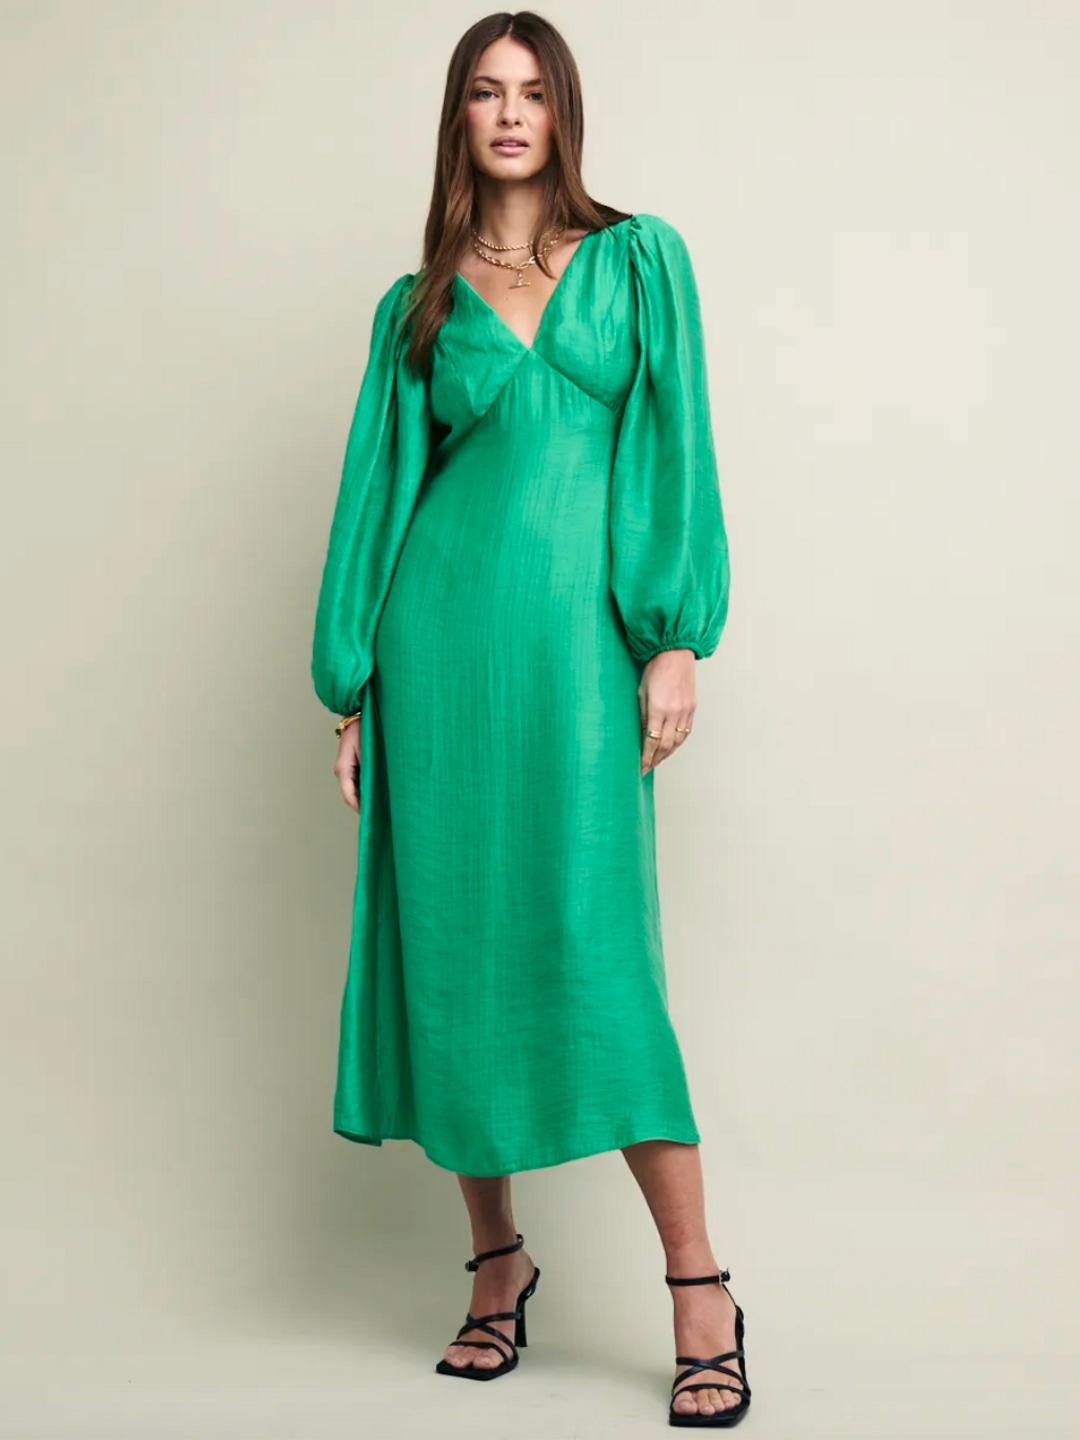 Green puff sleeve dress